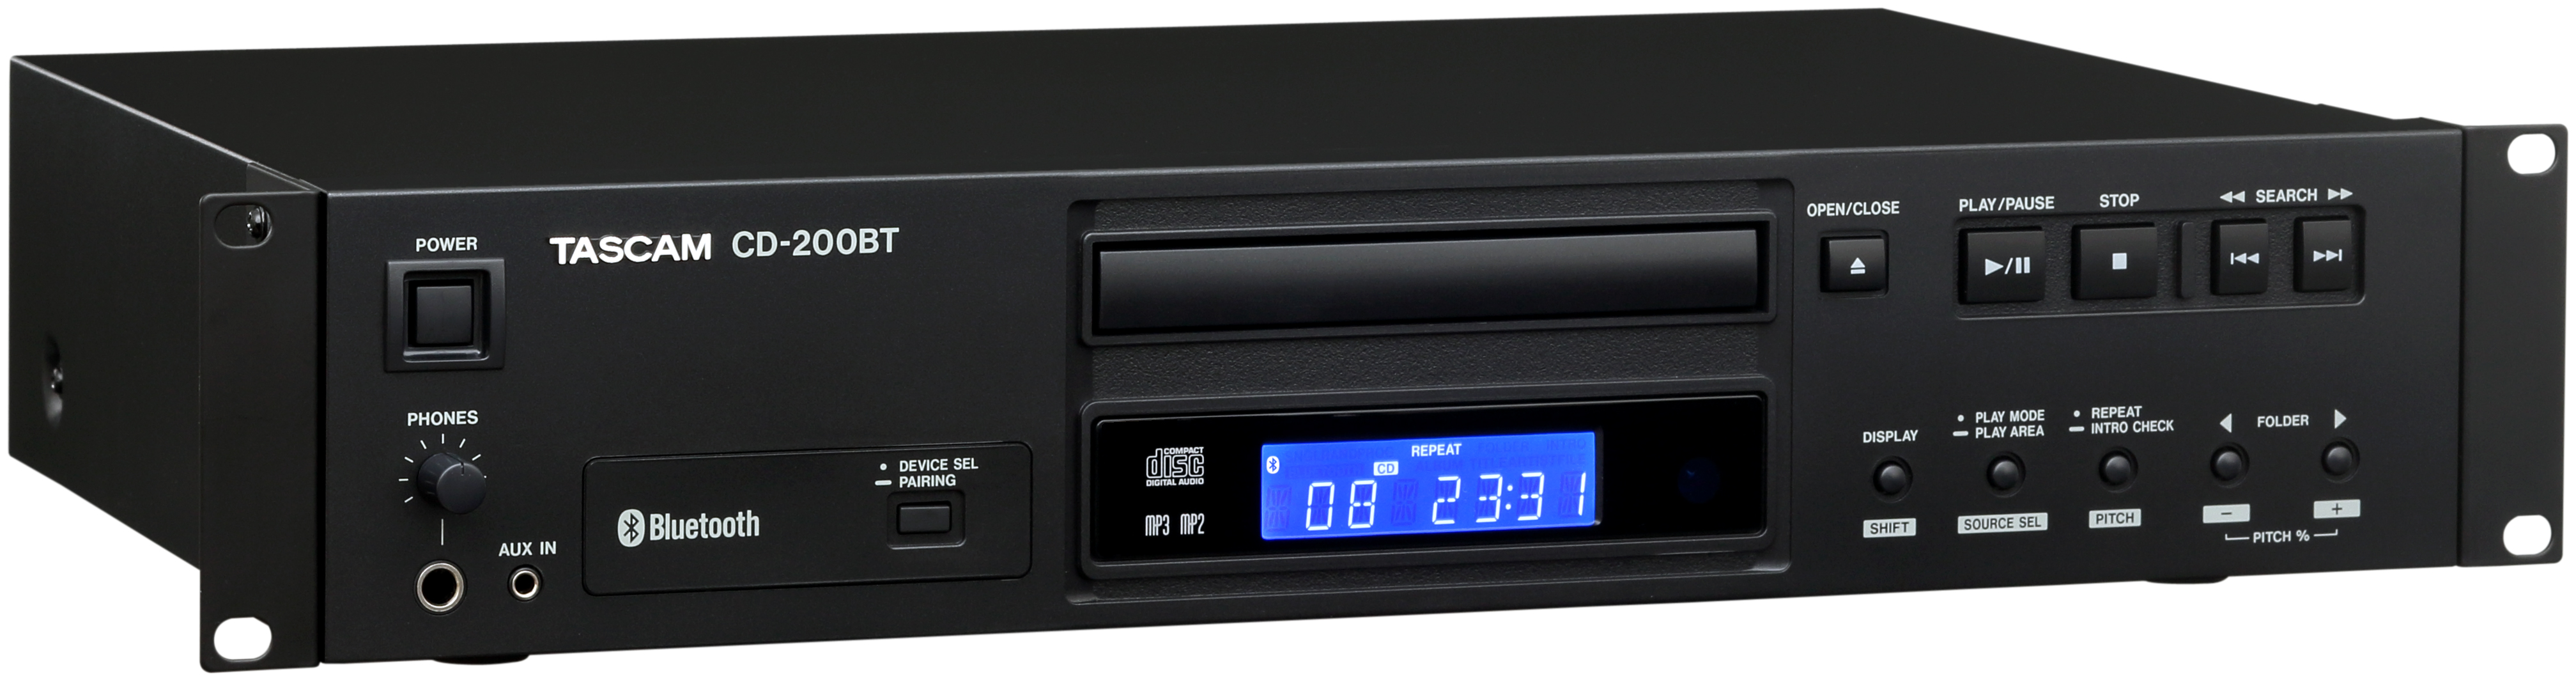 CD-200BT Bluetooth CD-Player